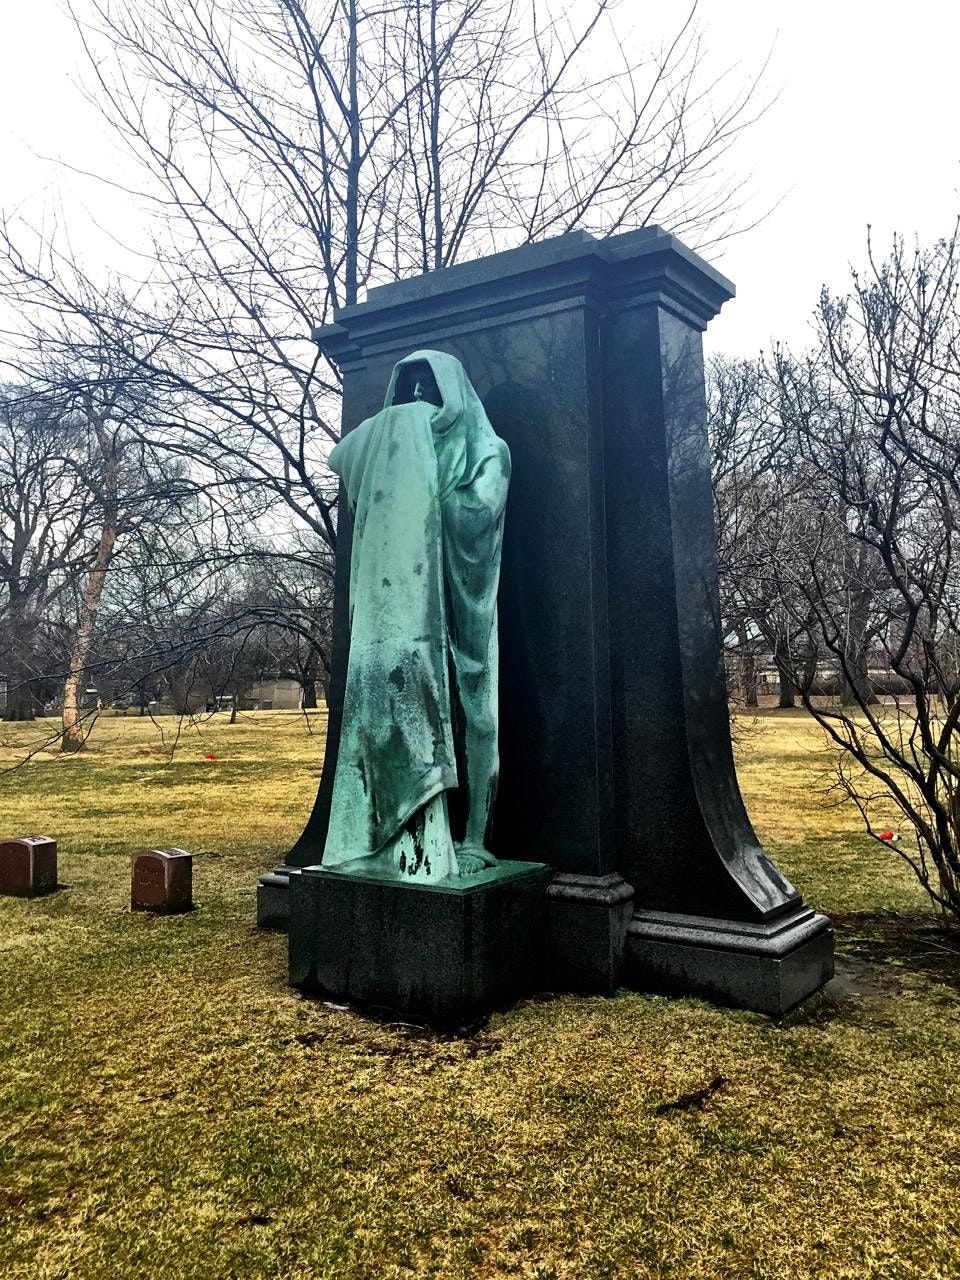 Graceland Cemetery Walking Tour: Stories, Symbols and Secrets